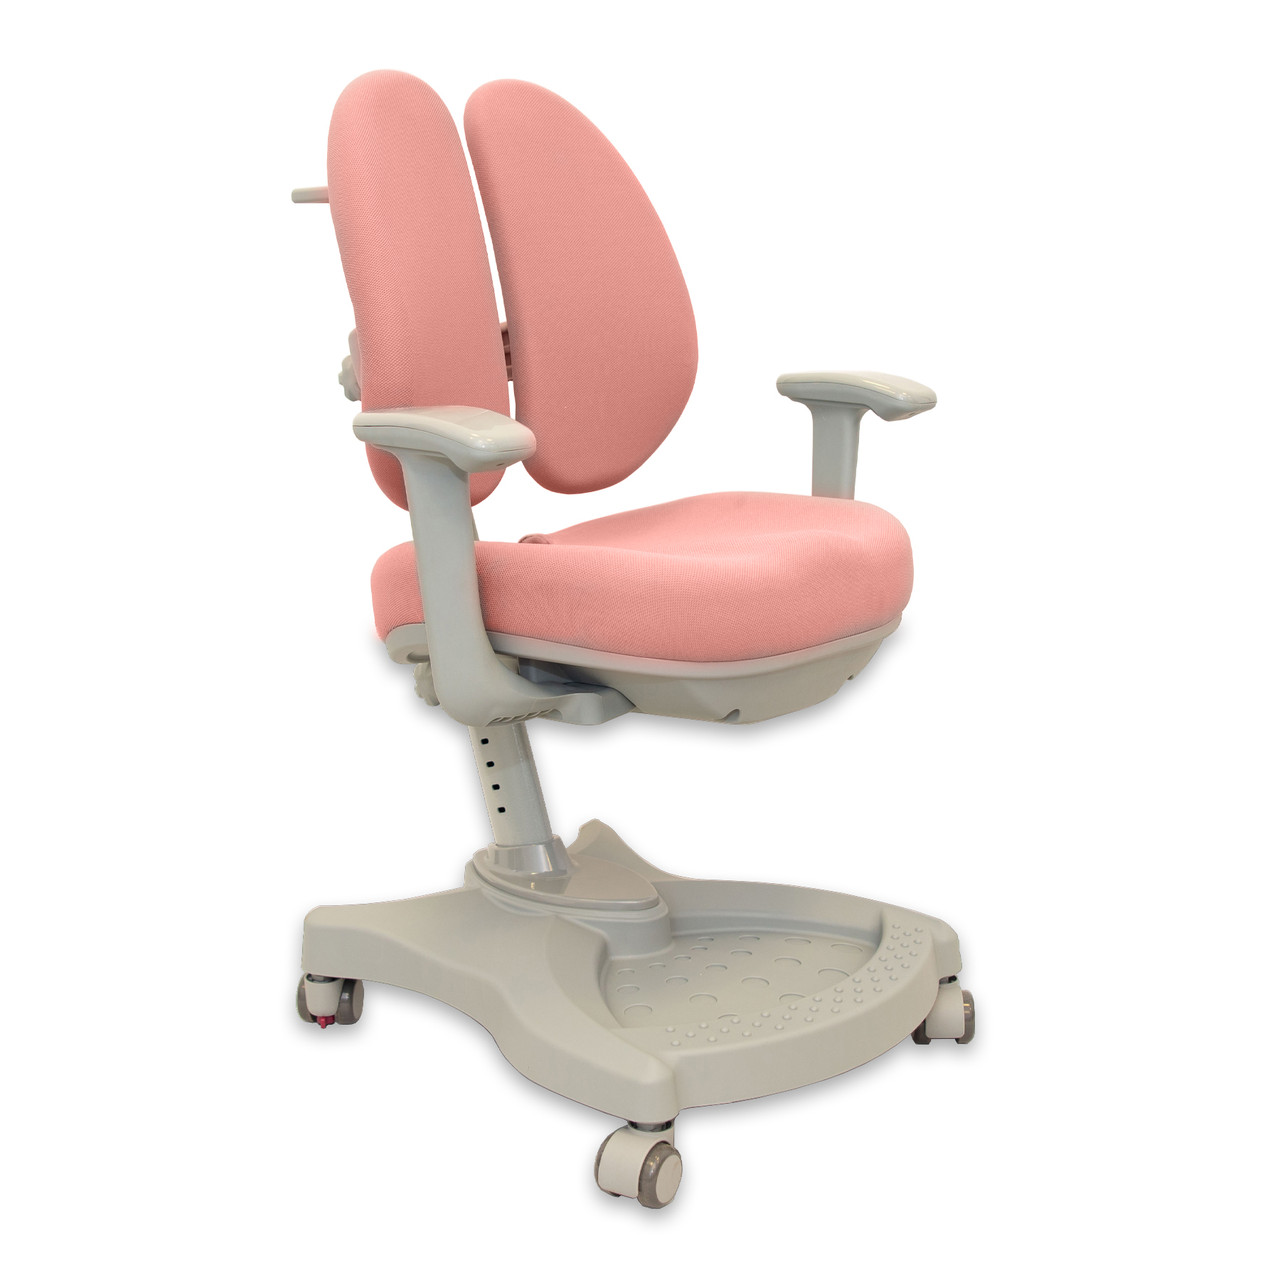 Дитяче ортопедичне крісло FunDesk Vetro Pink